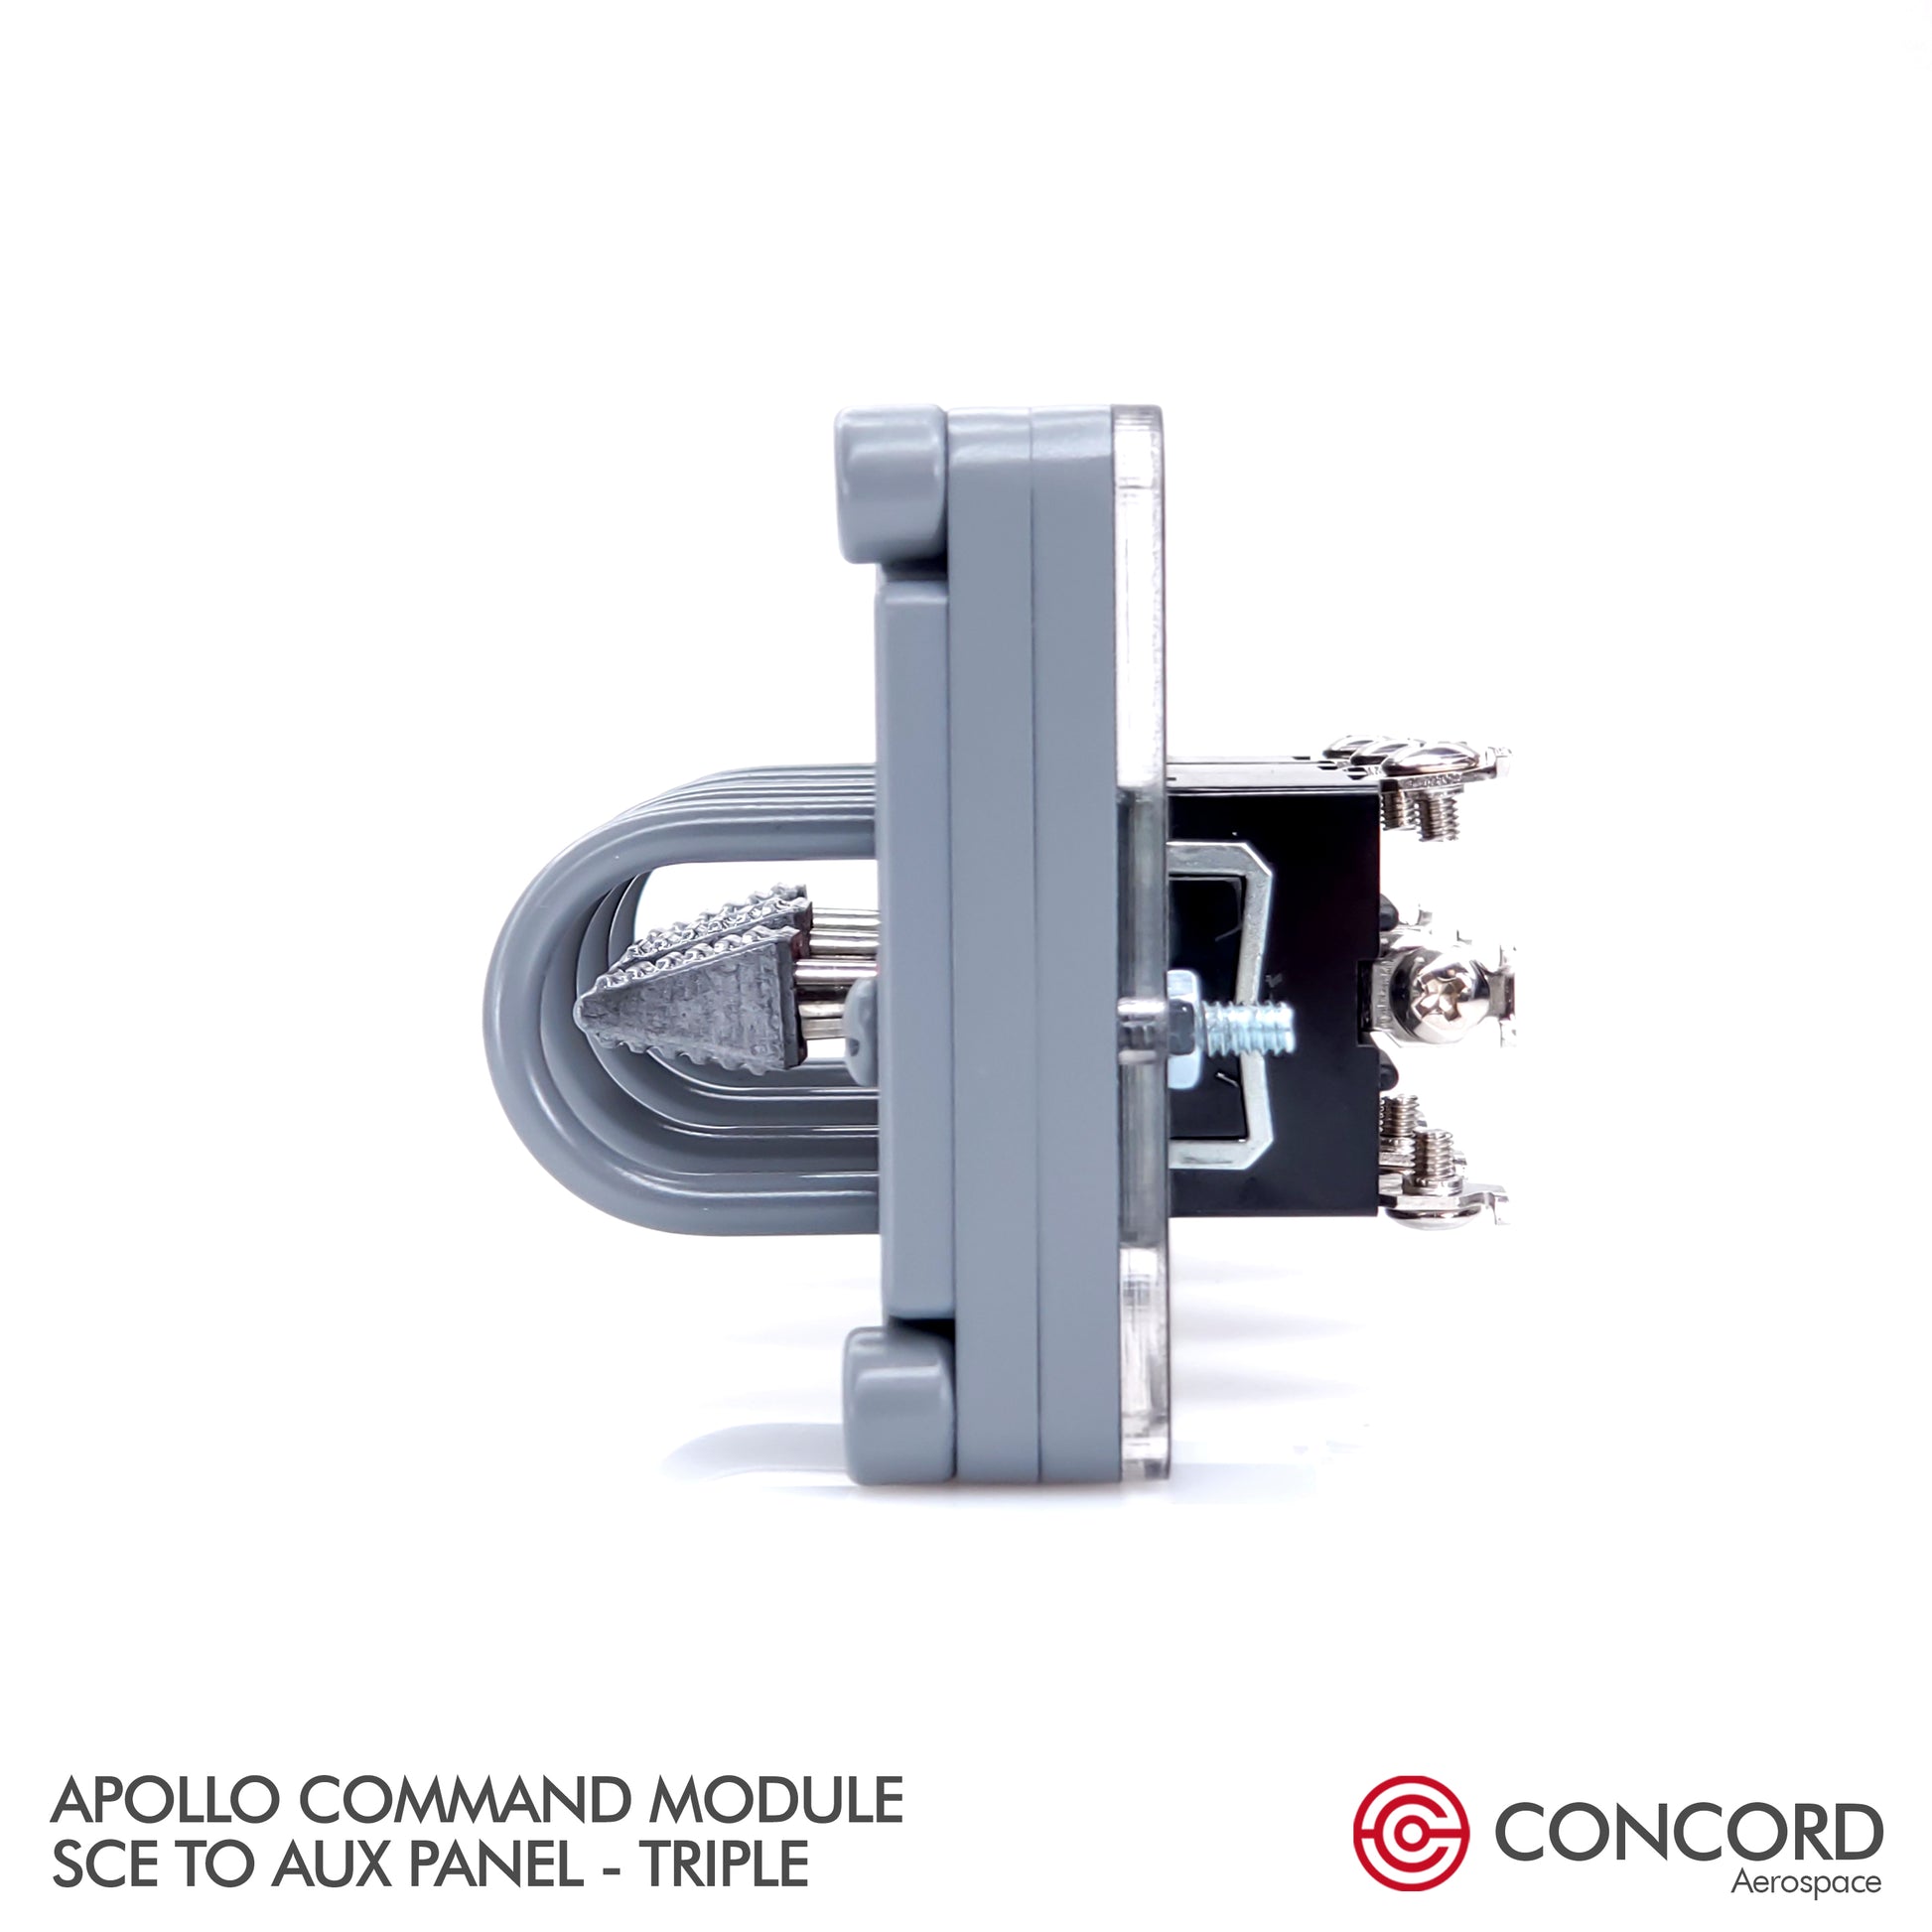 APOLLO COMMAND MODULE TRIPLE SWITCH PANEL - SCE to AUX - Concord Aerospace